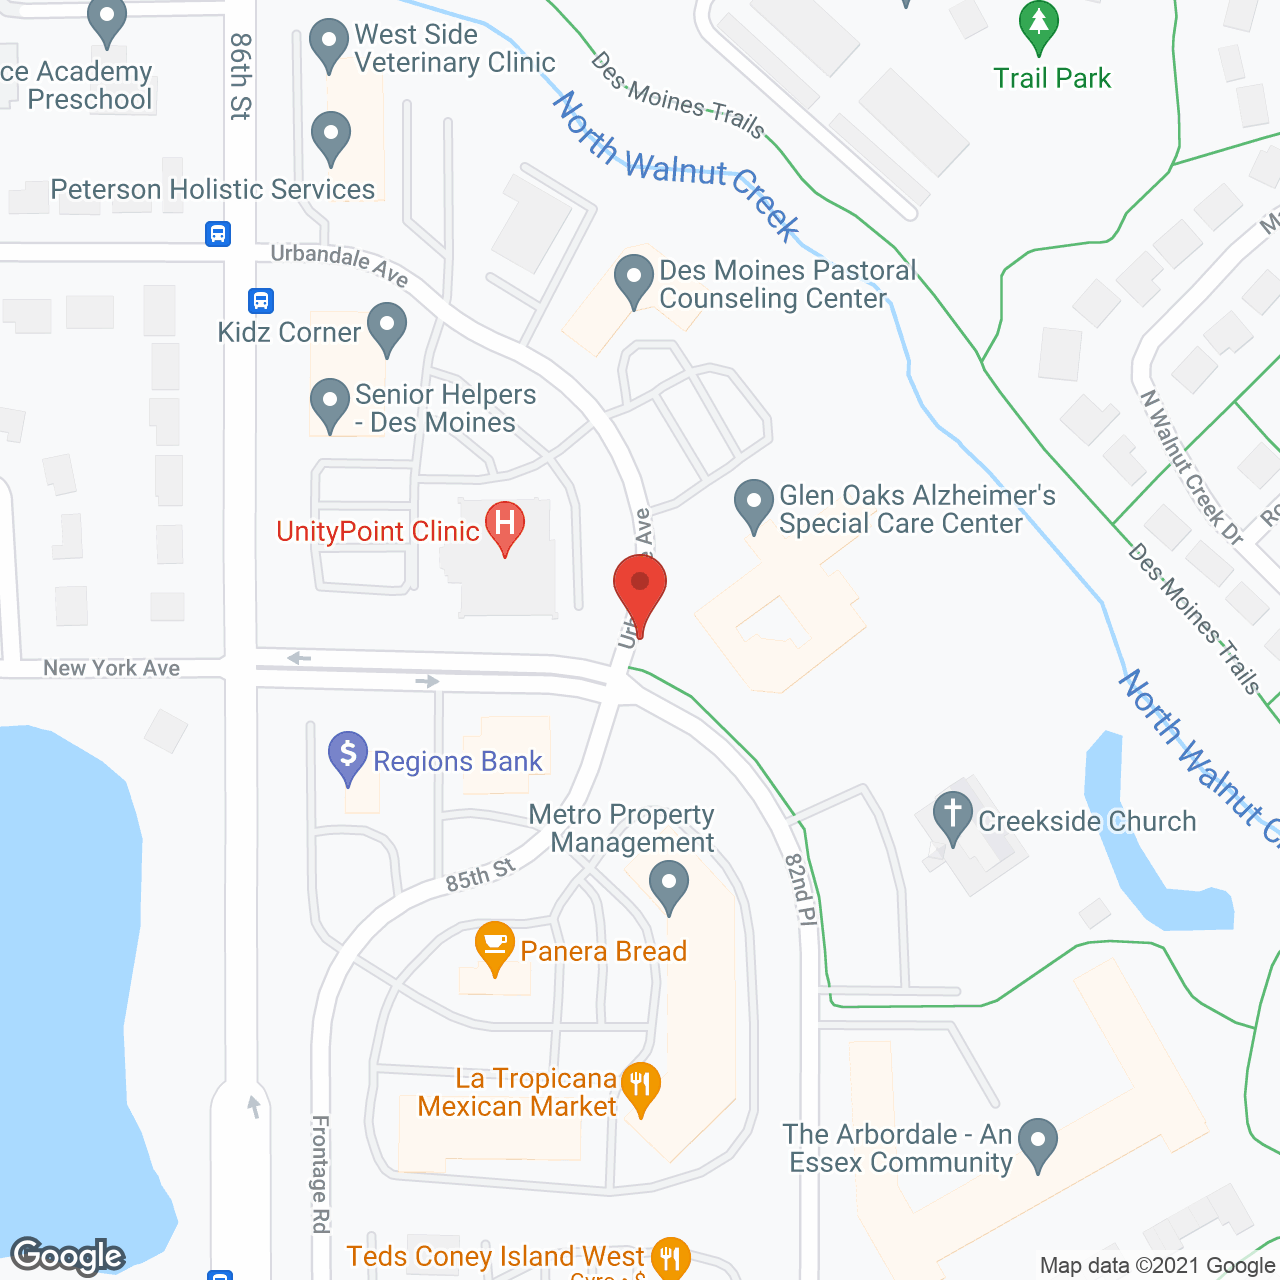 Glen Oaks Alzheimer's Special Care Center in google map